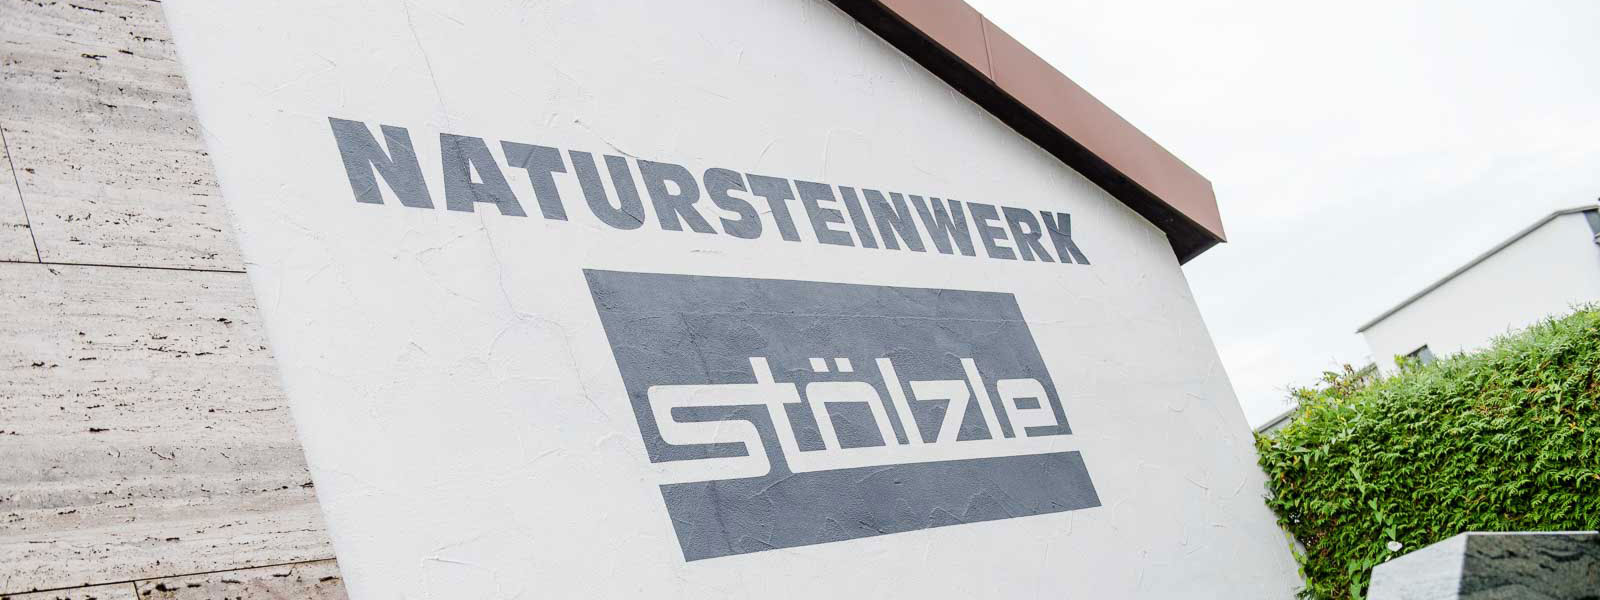 Natursteinwerk Stölzle: Über 110 Jahre Steinmetz-Tradition in Marmor und Granit. Handwerklicher Familienbetrieb seit vier Generationen in Altenstadt/Iller.